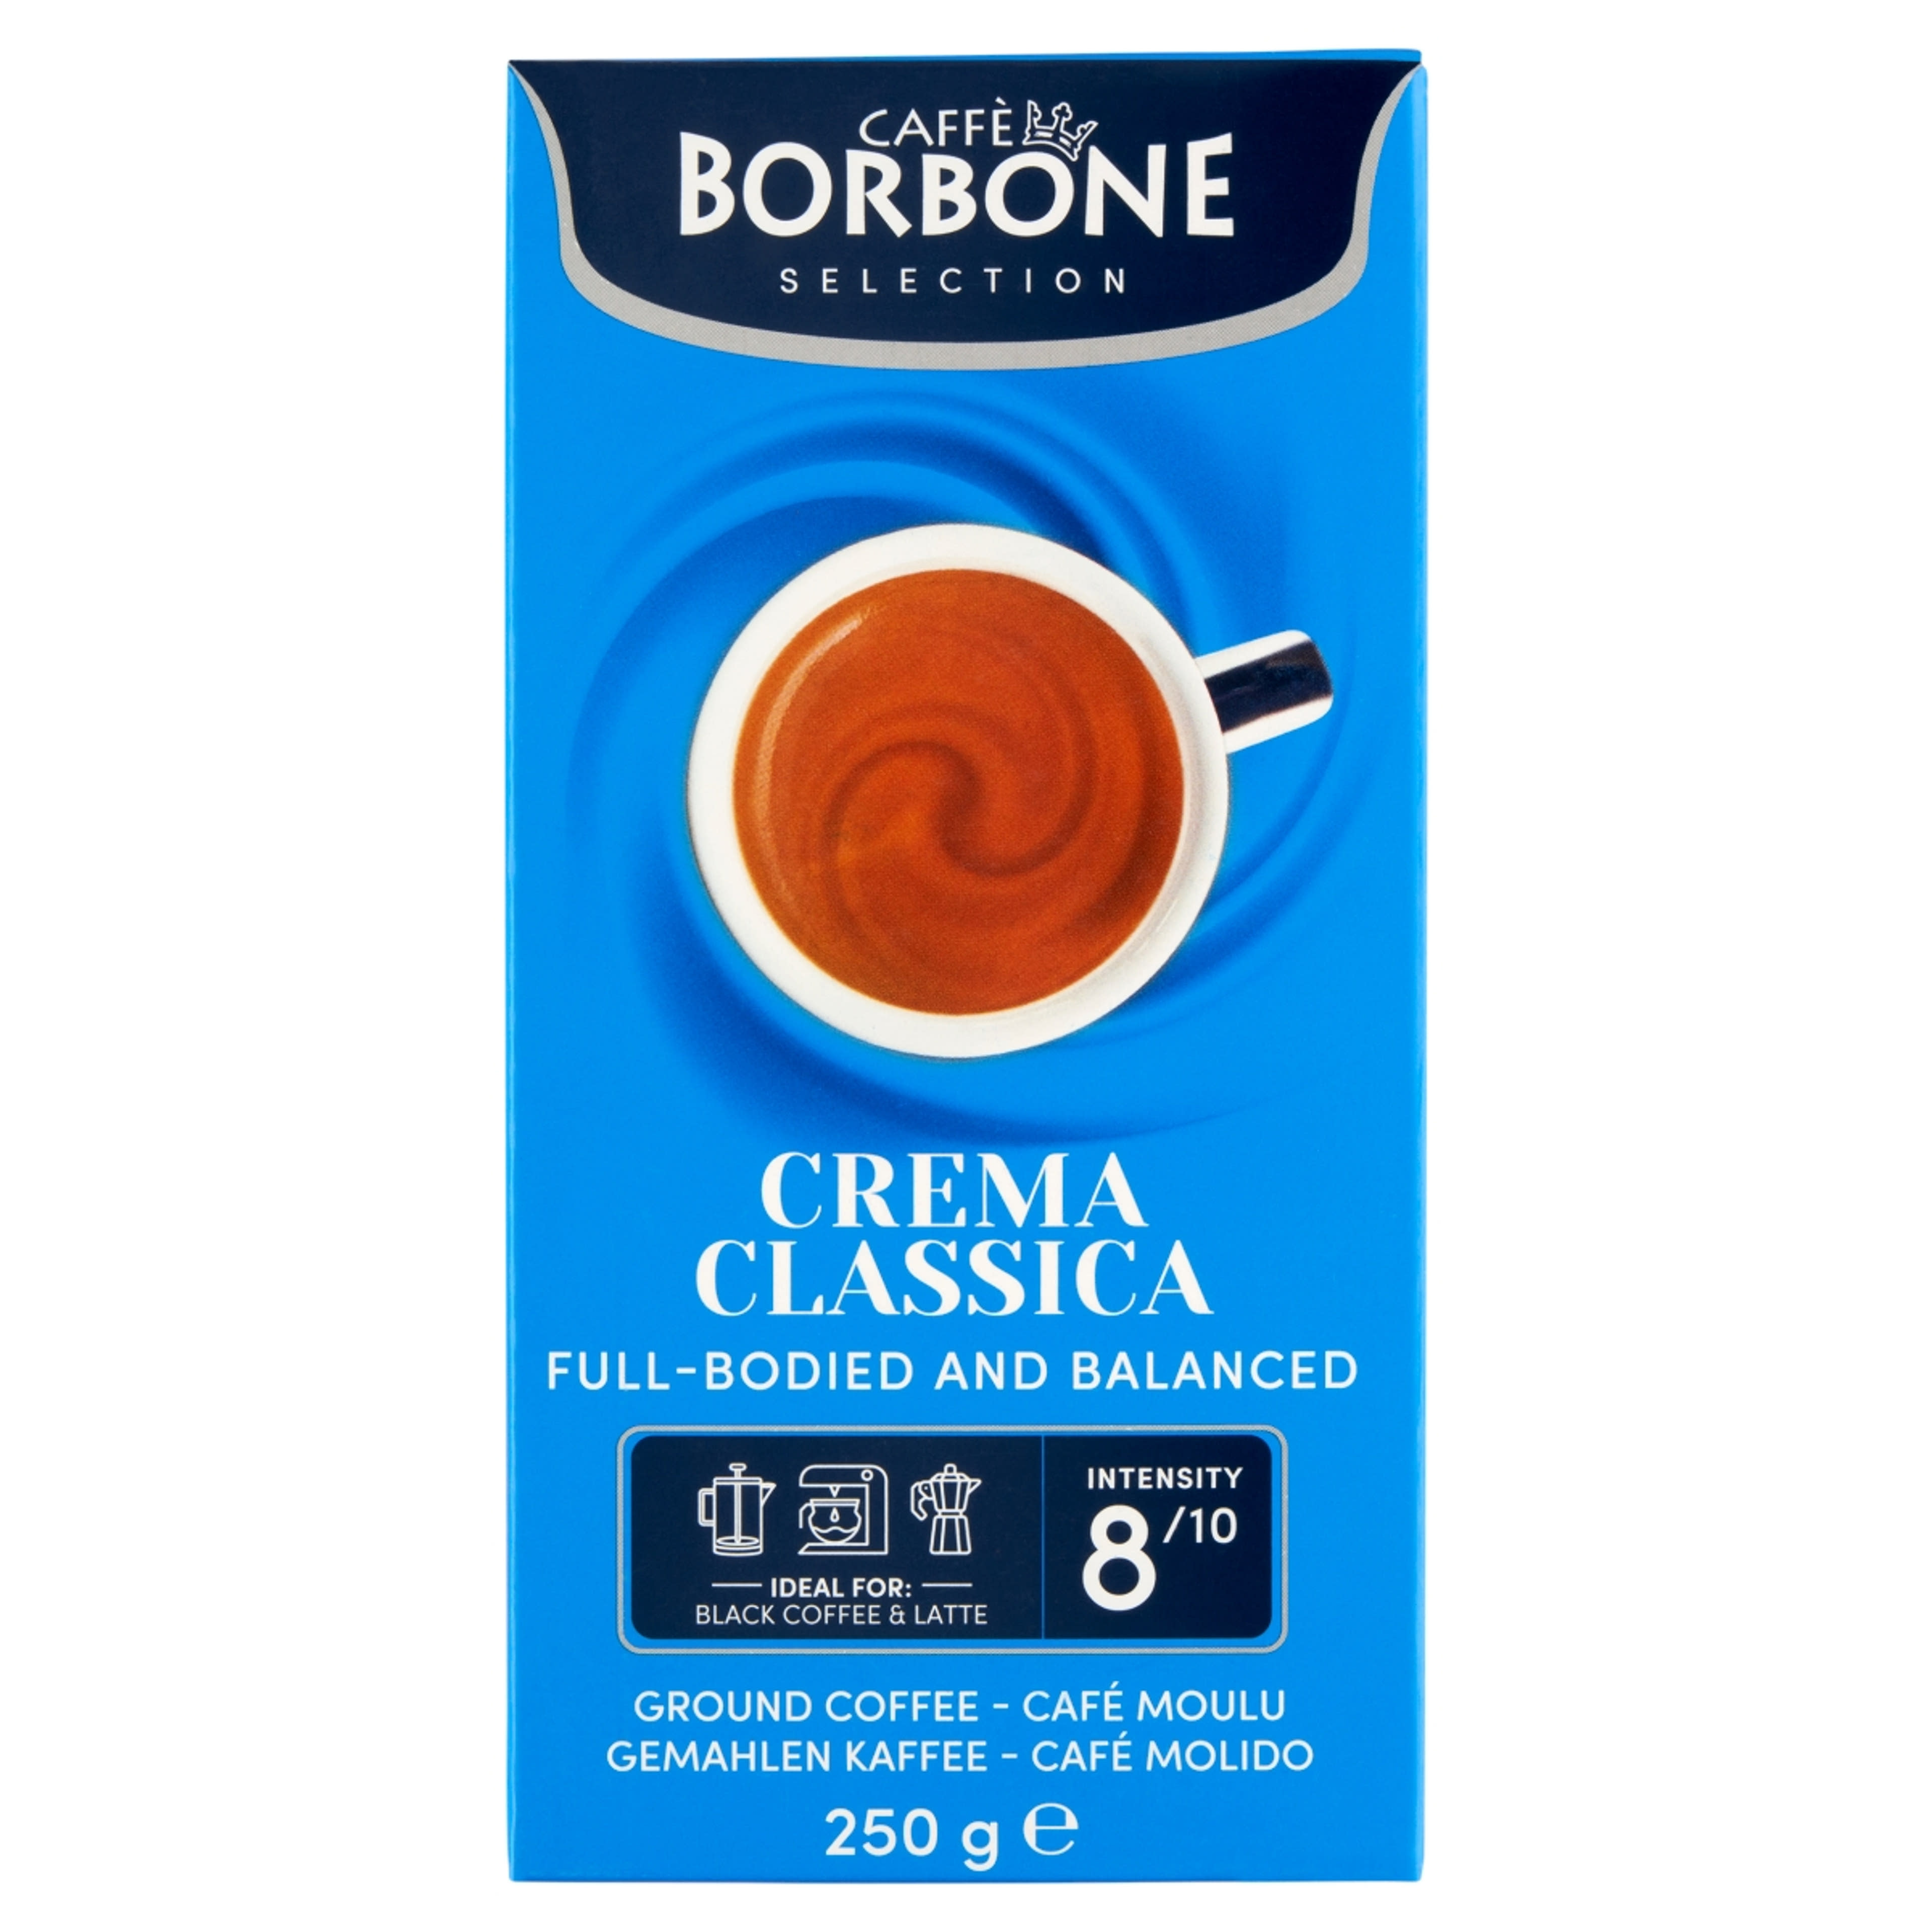 Caffè Borbone Crema Classica őrölt kávé - 250 g